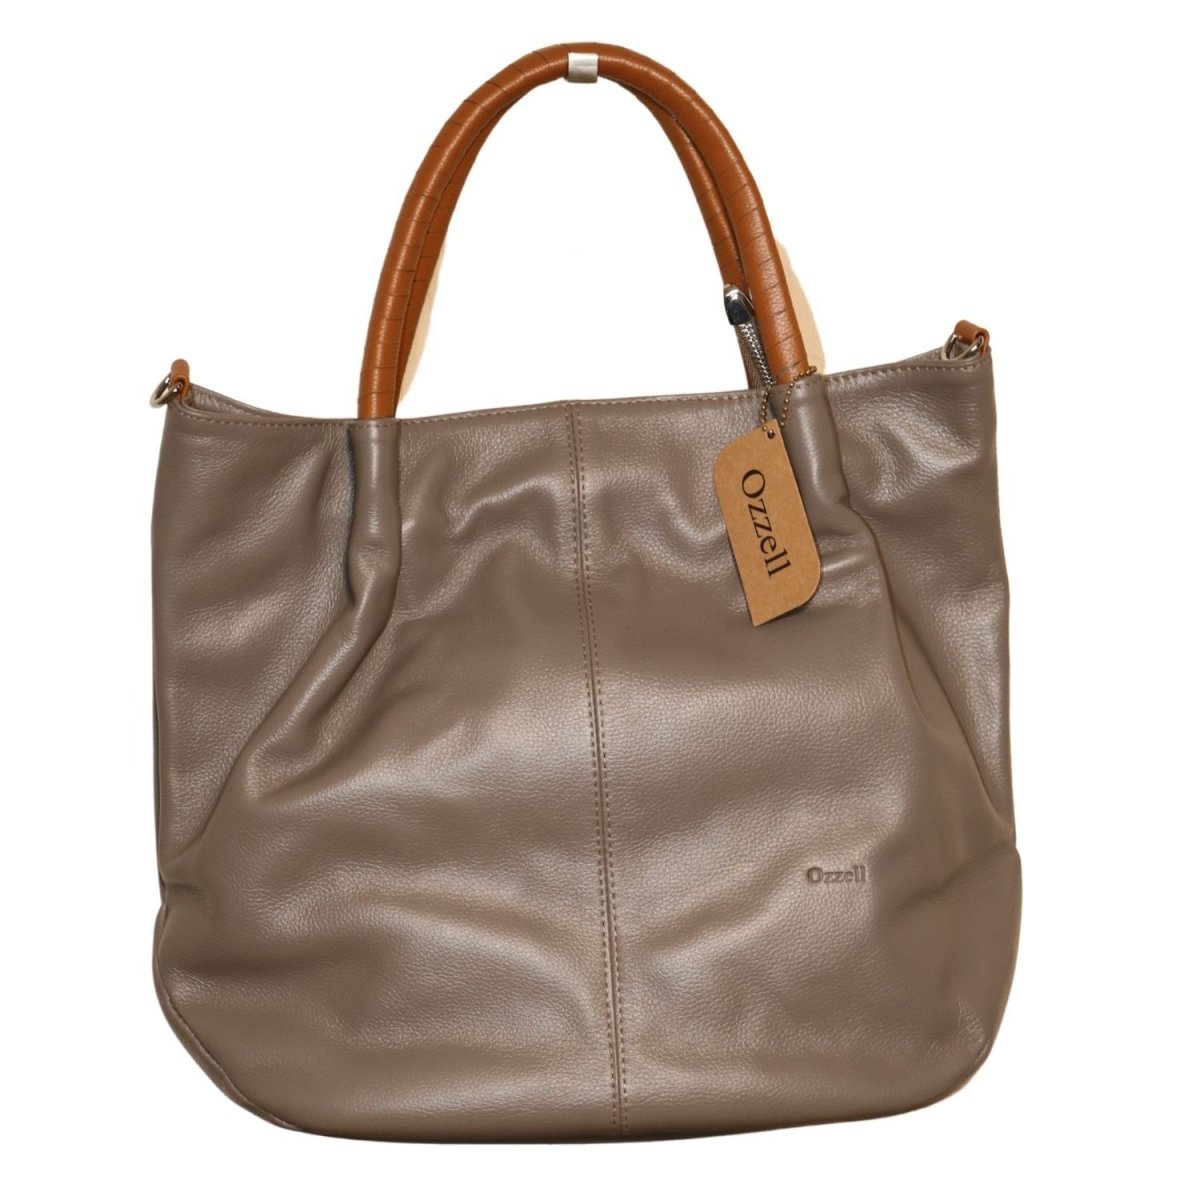 Sydney Leather Handbag - Ozzell London